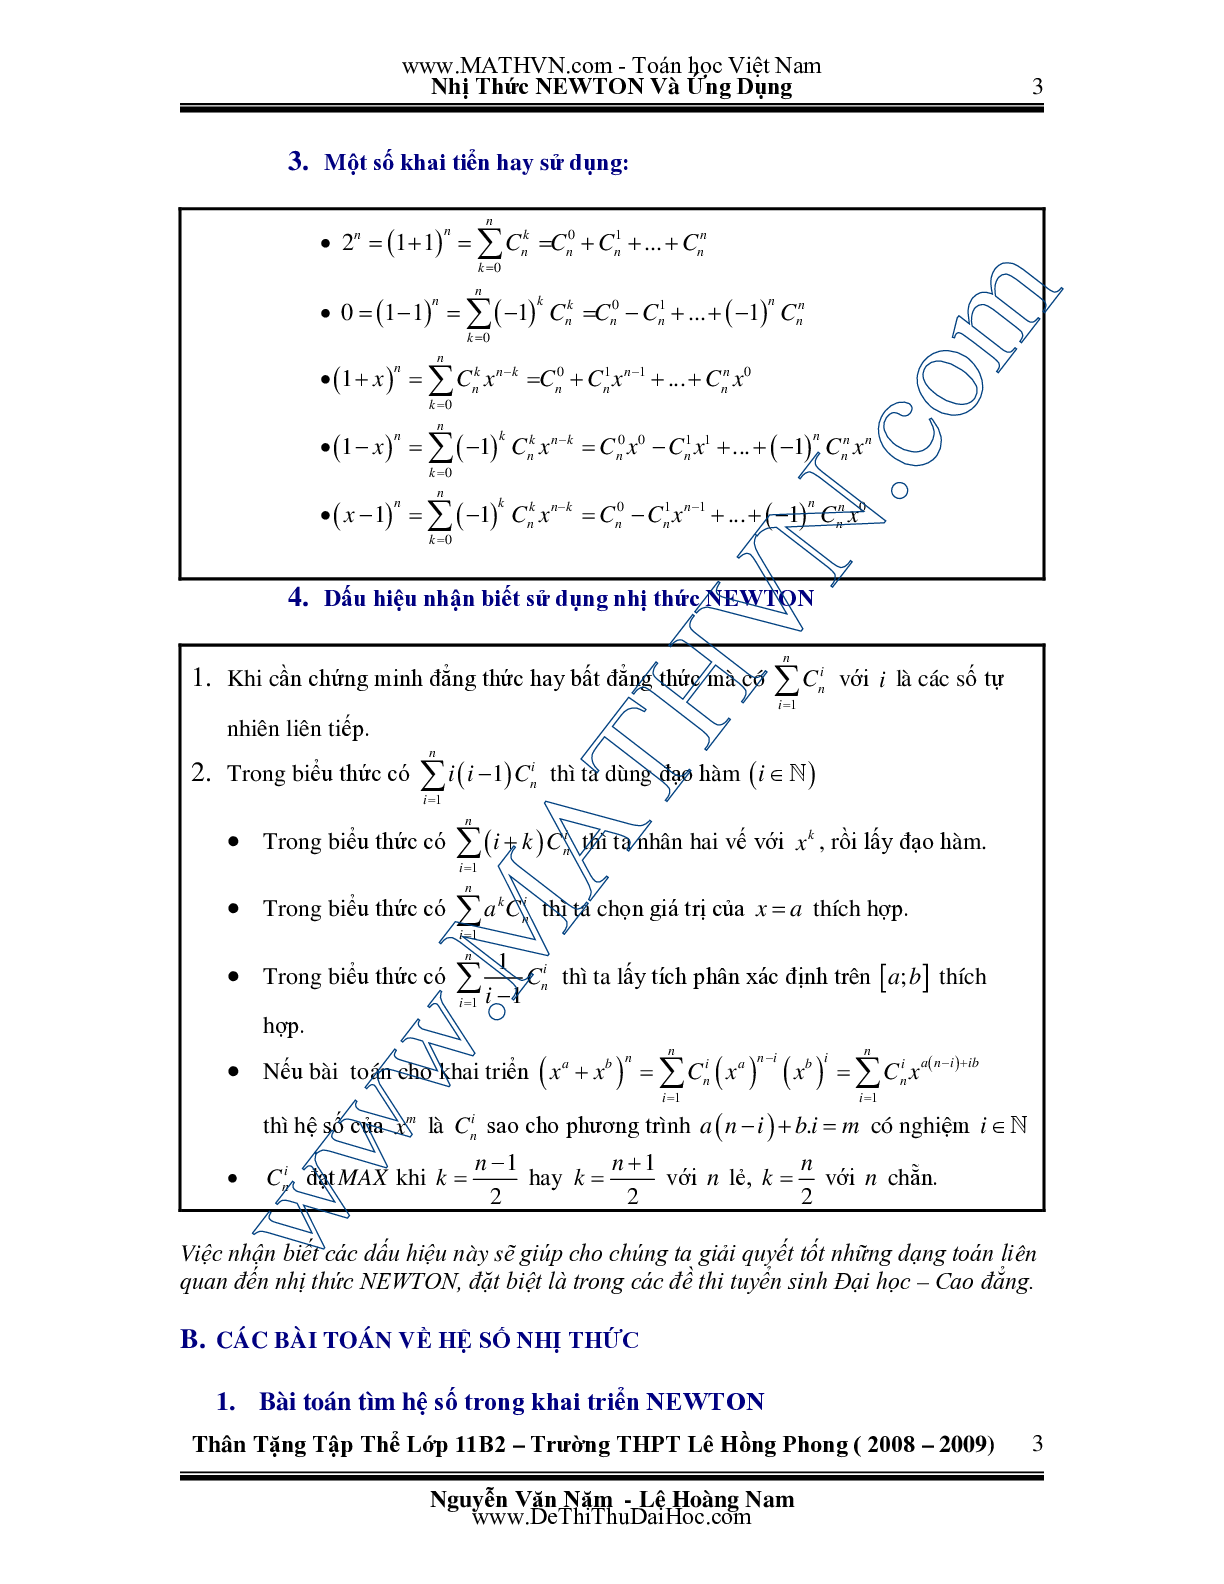 Chuyên đề Nhị thức Newton và ứng dụng môn Toán lớp 11 (trang 3)